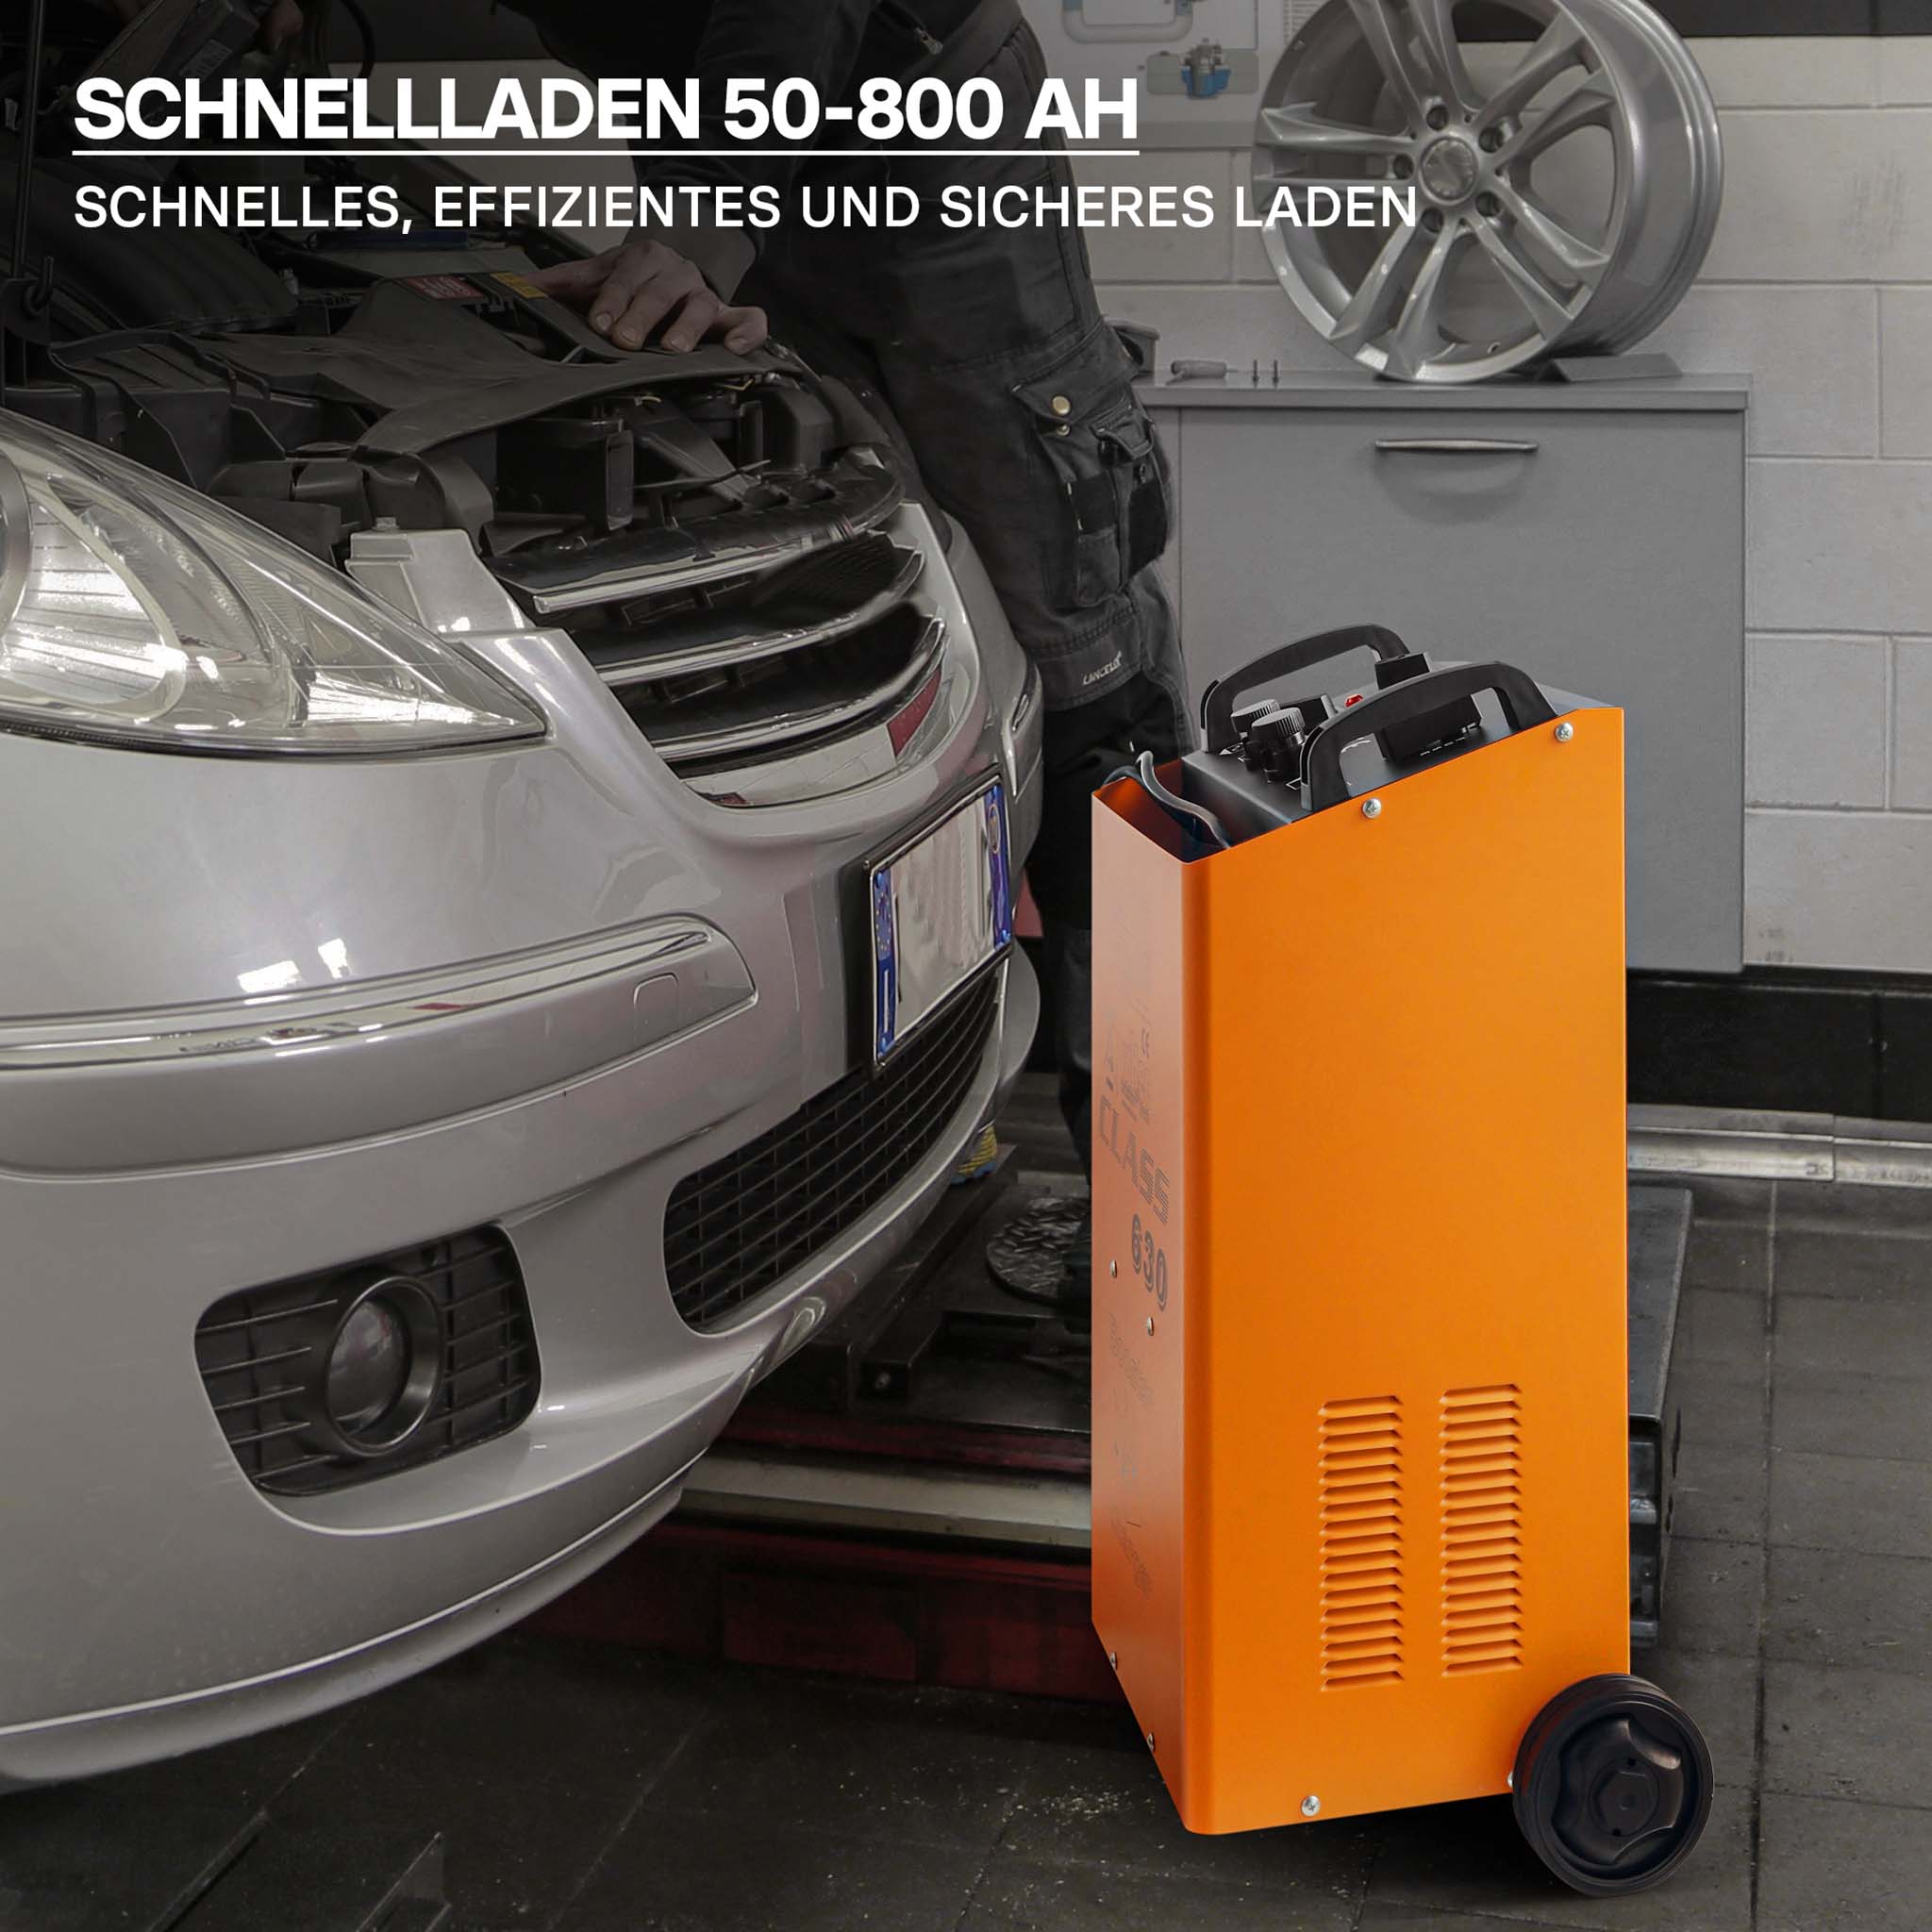 Cargador baterías vehículos 6V 12V 6A Batería Dispositivo carga Automóviles  Taller mecánico Garaje